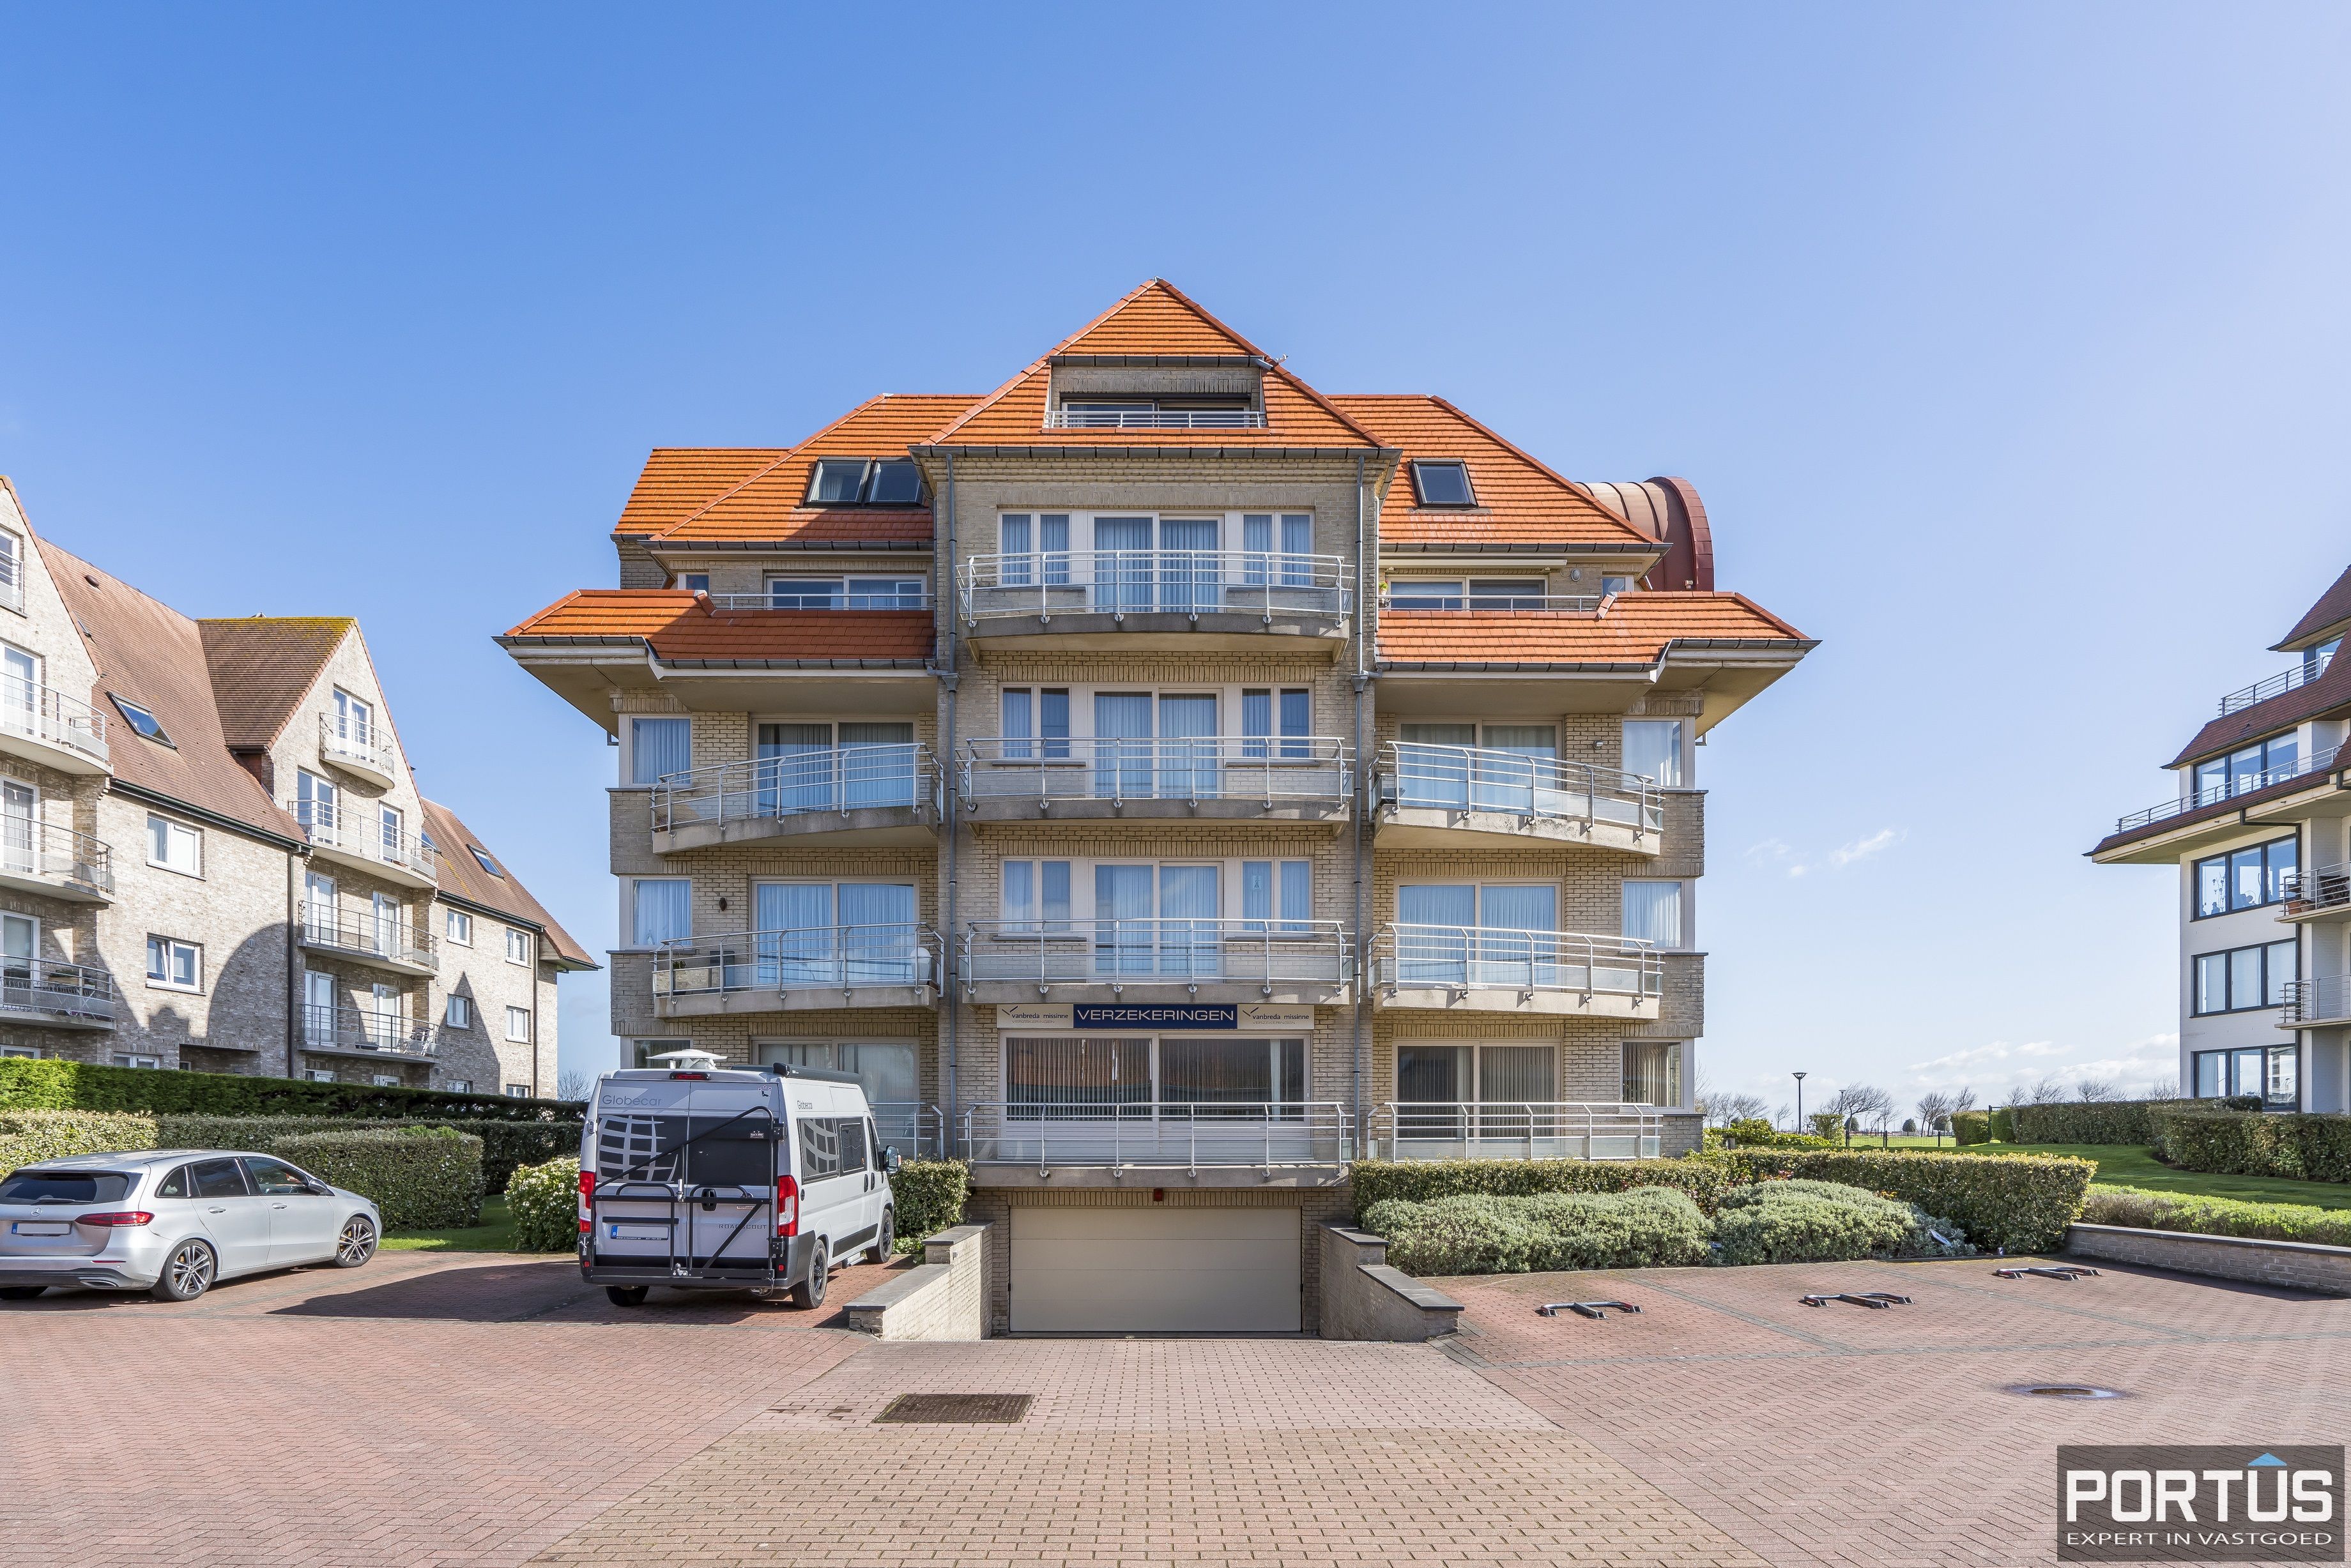 Appartement/Handelsgelijkvloers met terras te koop te Nieuwpoort - 15038